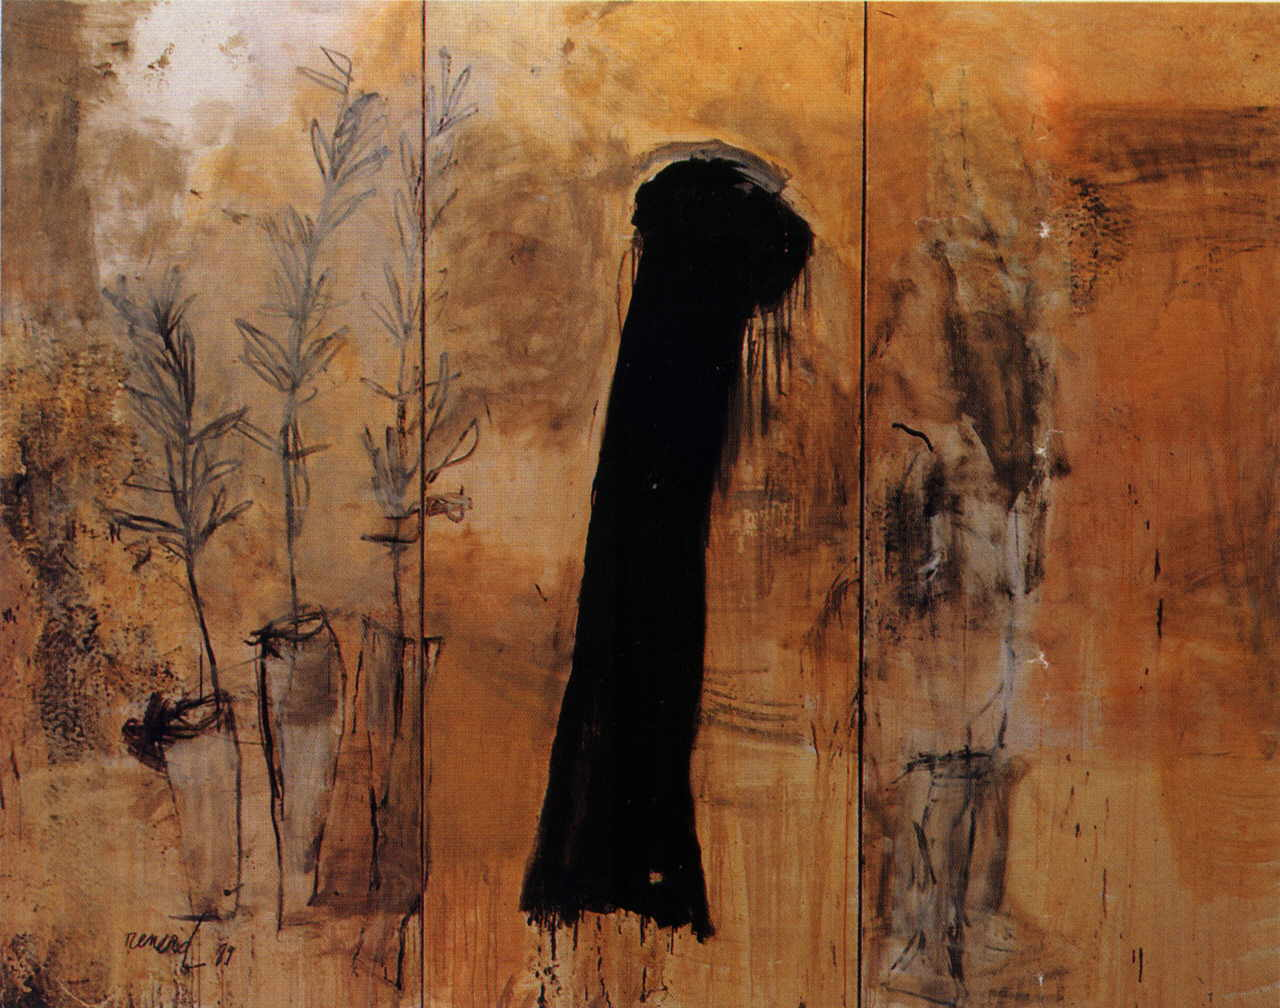 Renard Emmanuelle 
"Tryptichon", 1989
mixed media / canvas
250 x 330 cm